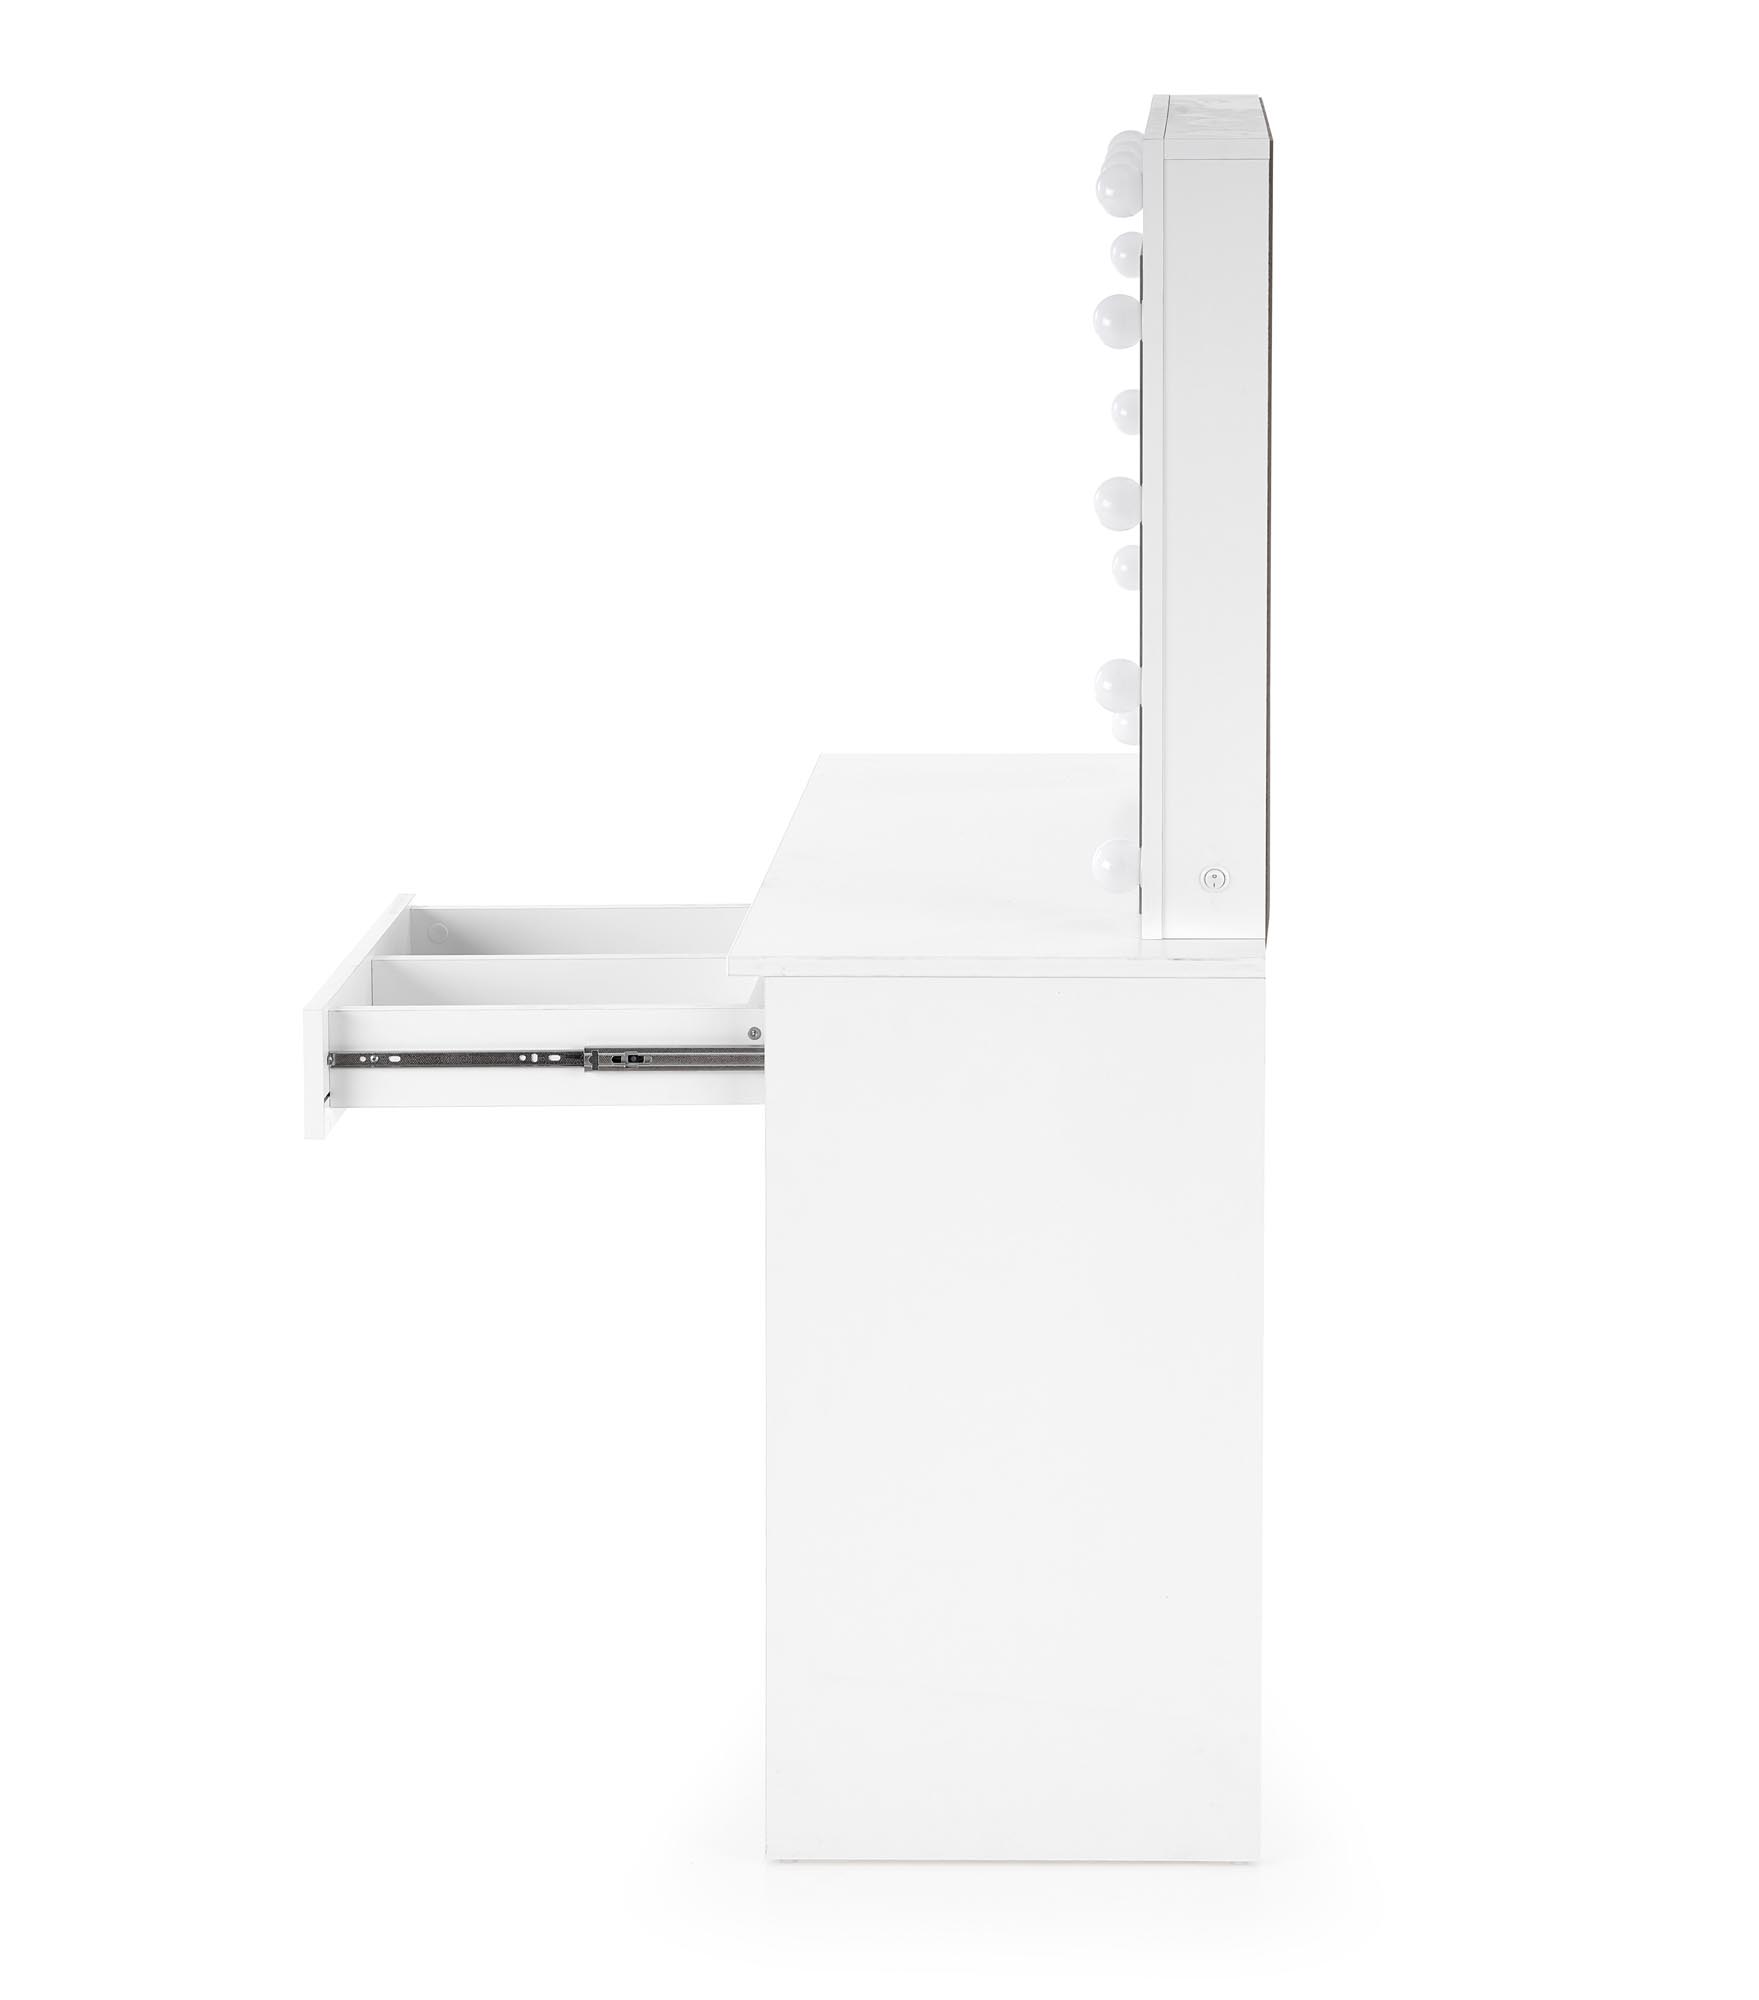 Moderný toaletný stolík Hollywood 95 cm s osvetlením - biela moderná Toaletný Stôlík hollywood z podswietleniem - Biely